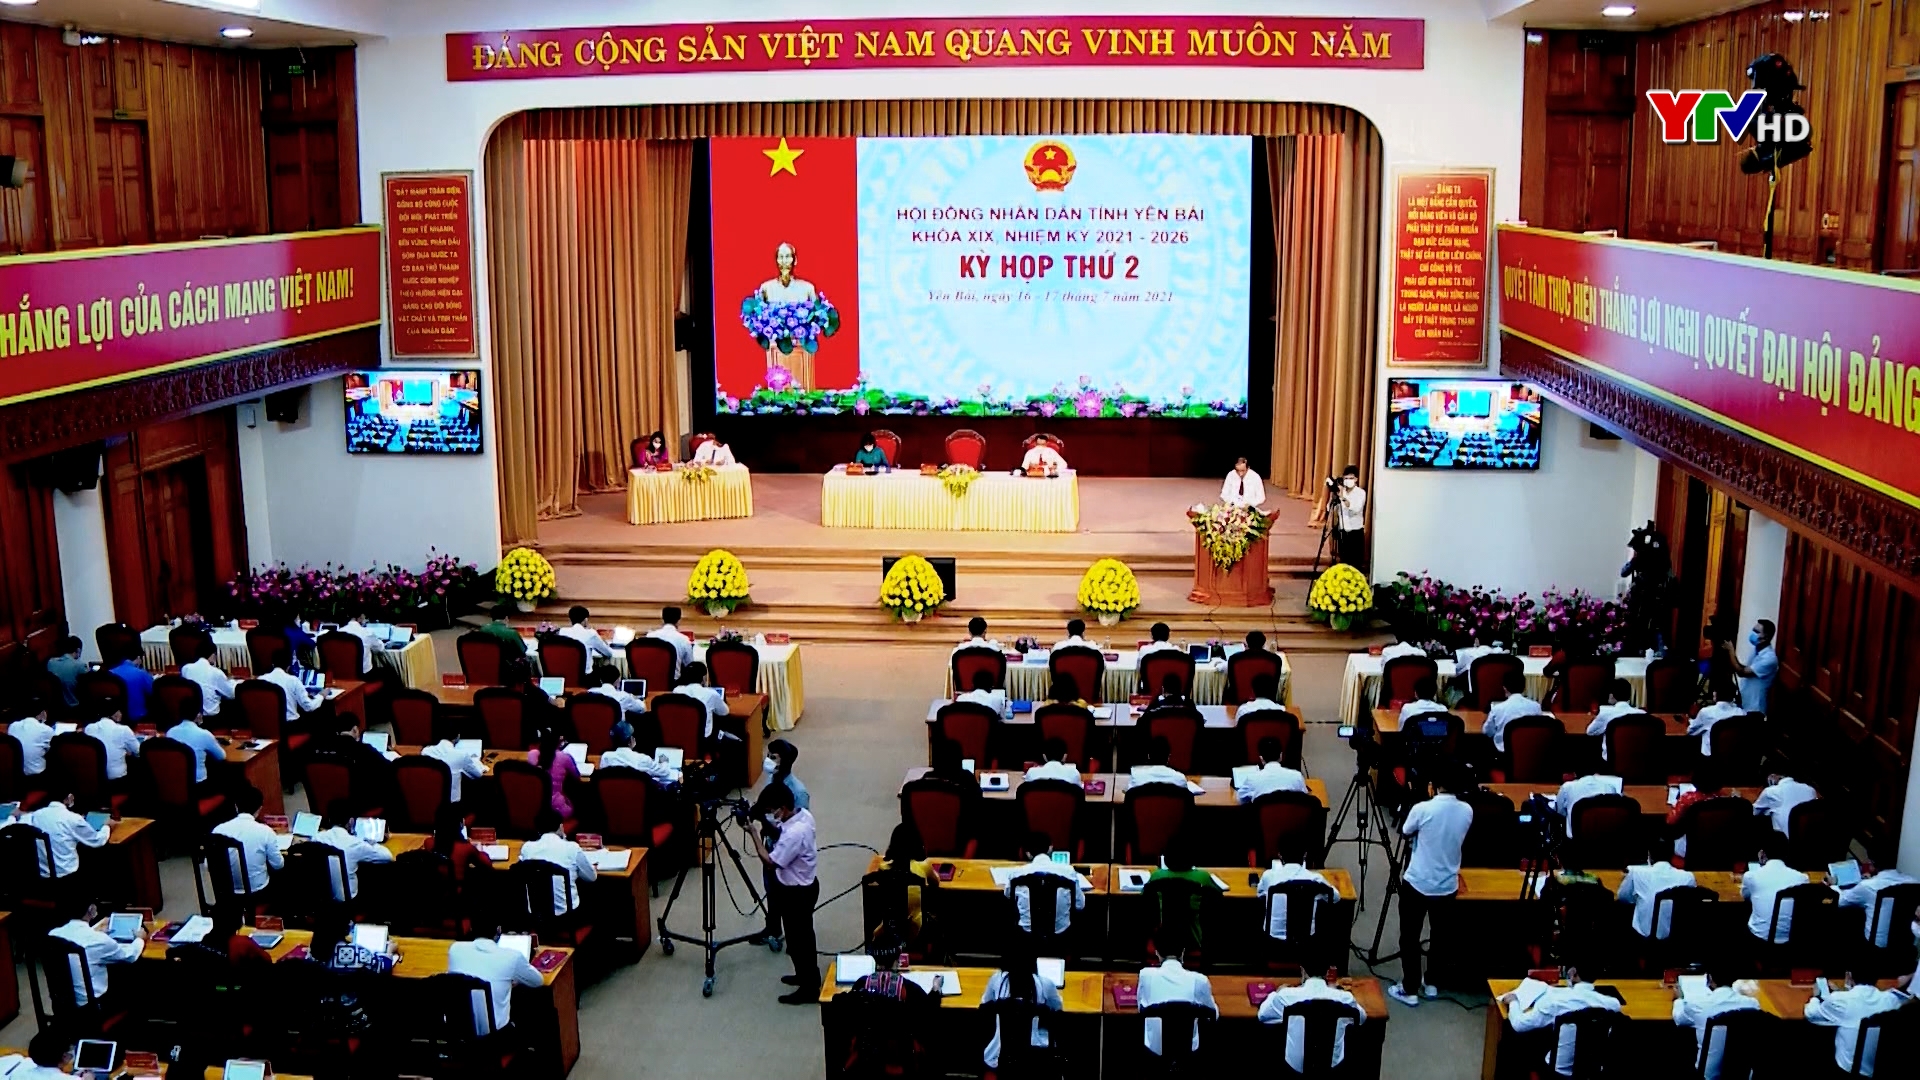 Khai mạc kỳ họp thứ 2 - HĐND tỉnh Yên Bái khóa XIX